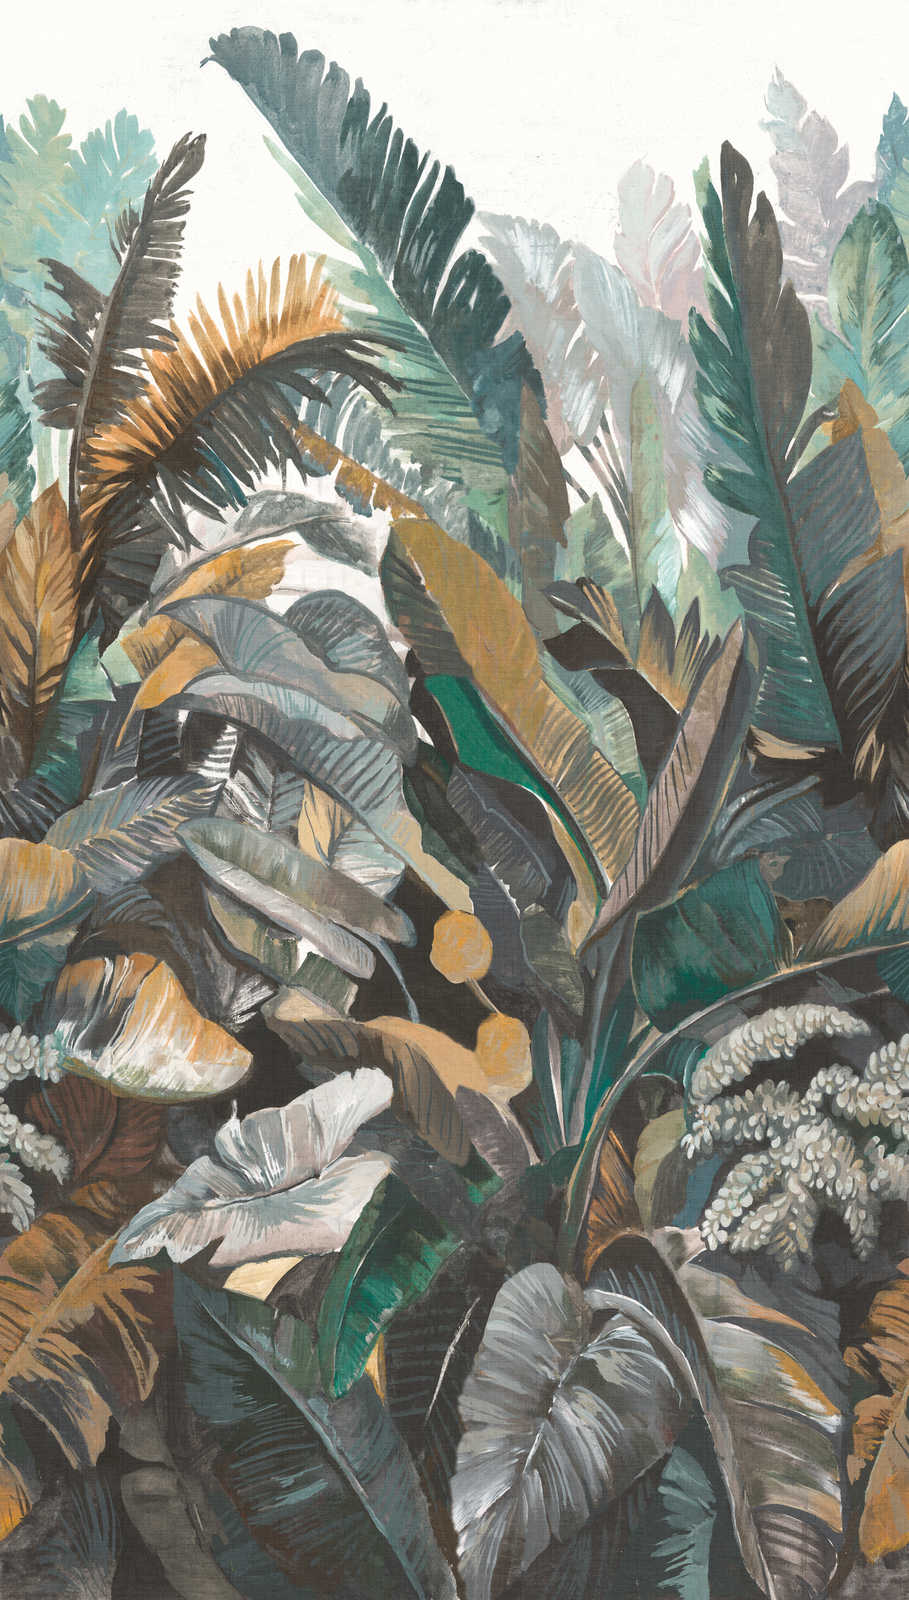             Vliestapete mit großflächigem Dschungelmotiv – Grün, Beige
        